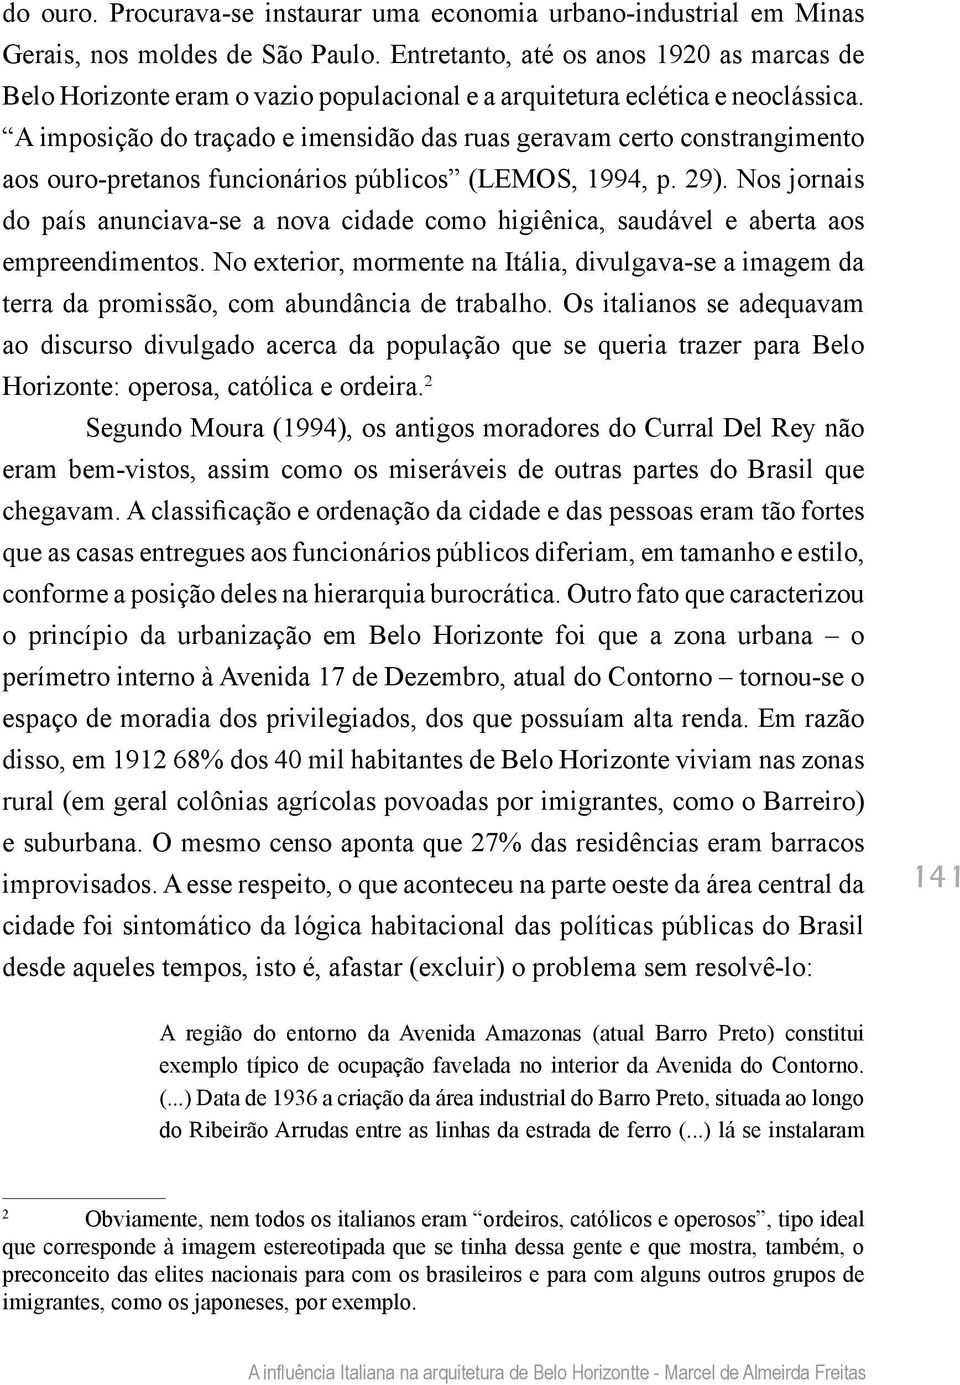 A imposição do traçado e imensidão das ruas geravam certo constrangimento aos ouro-pretanos funcionários públicos (LEMOS, 1994, p. 29).